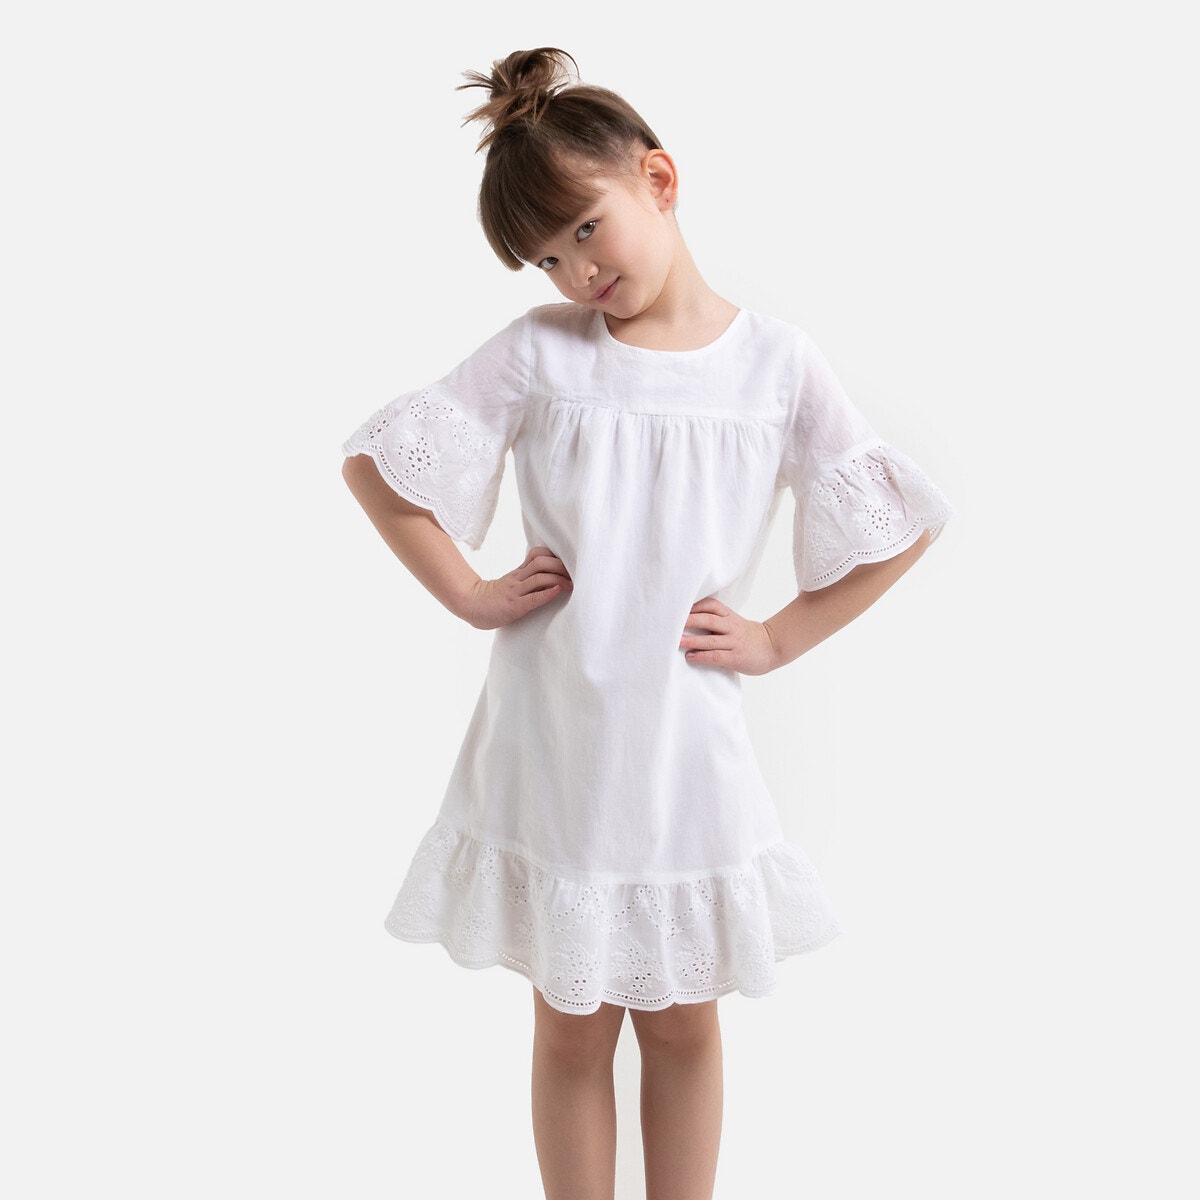 Κοντομάνικο φόρεμα με κοφτό κέντημα, 3-12 ετών ΠΑΙΔΙ | Φορέματα | Κοντά μανίκια